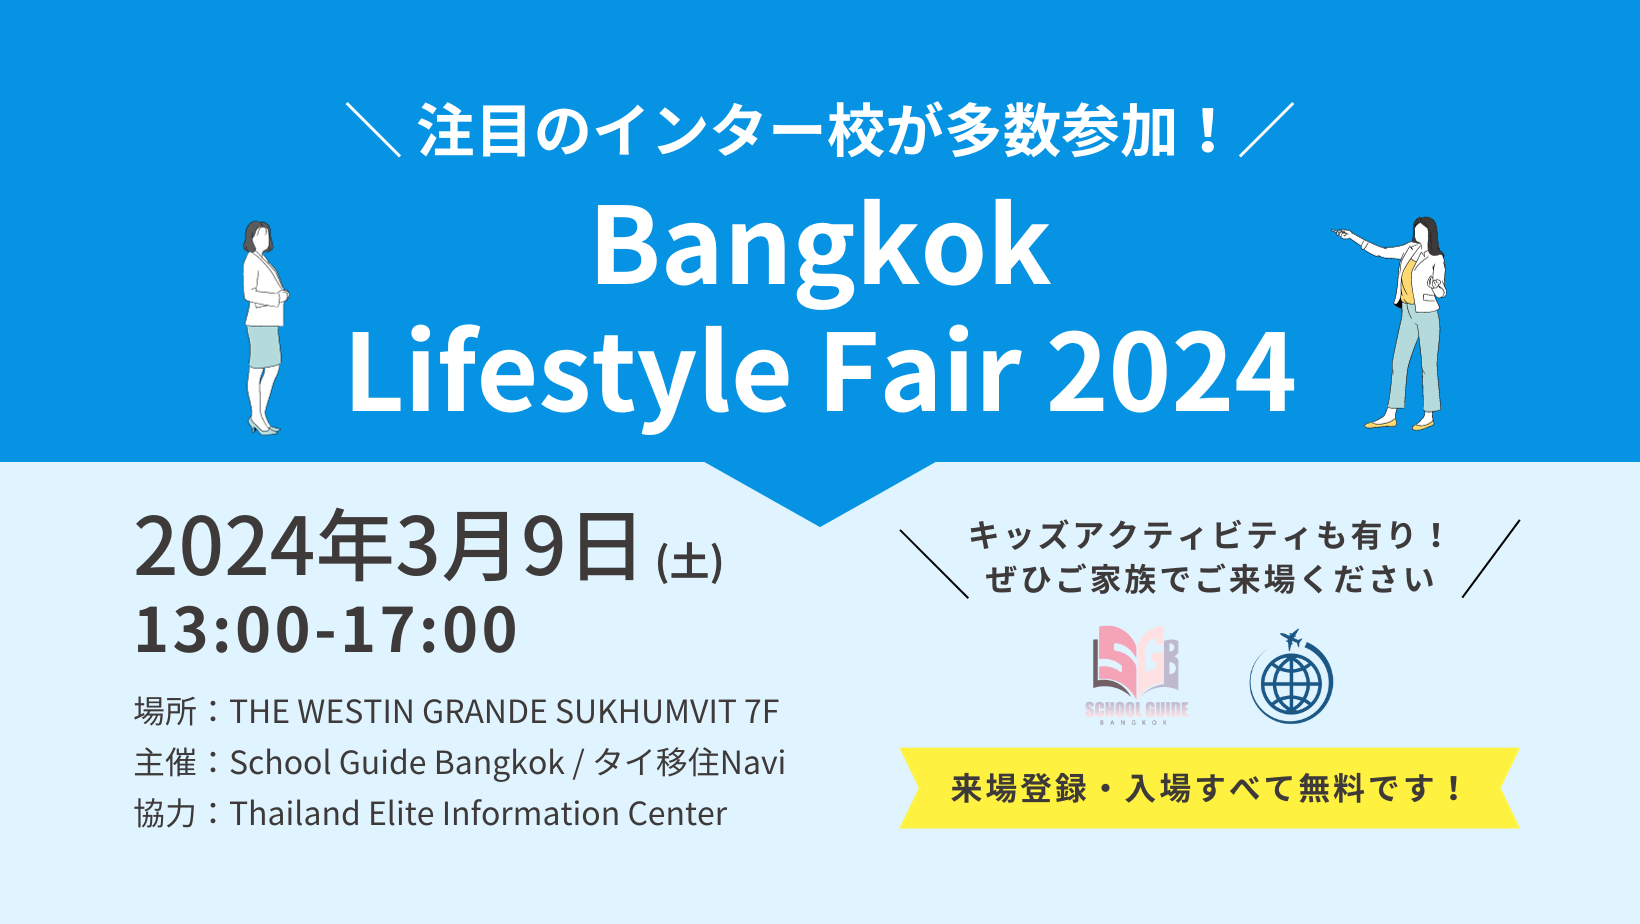 タイのインターナショナルスクールが多数参加！
タイ移住予定者・在住者向けイベント
「Bangkok Lifestyle Fair」が2024年3月9日バンコクにて開催